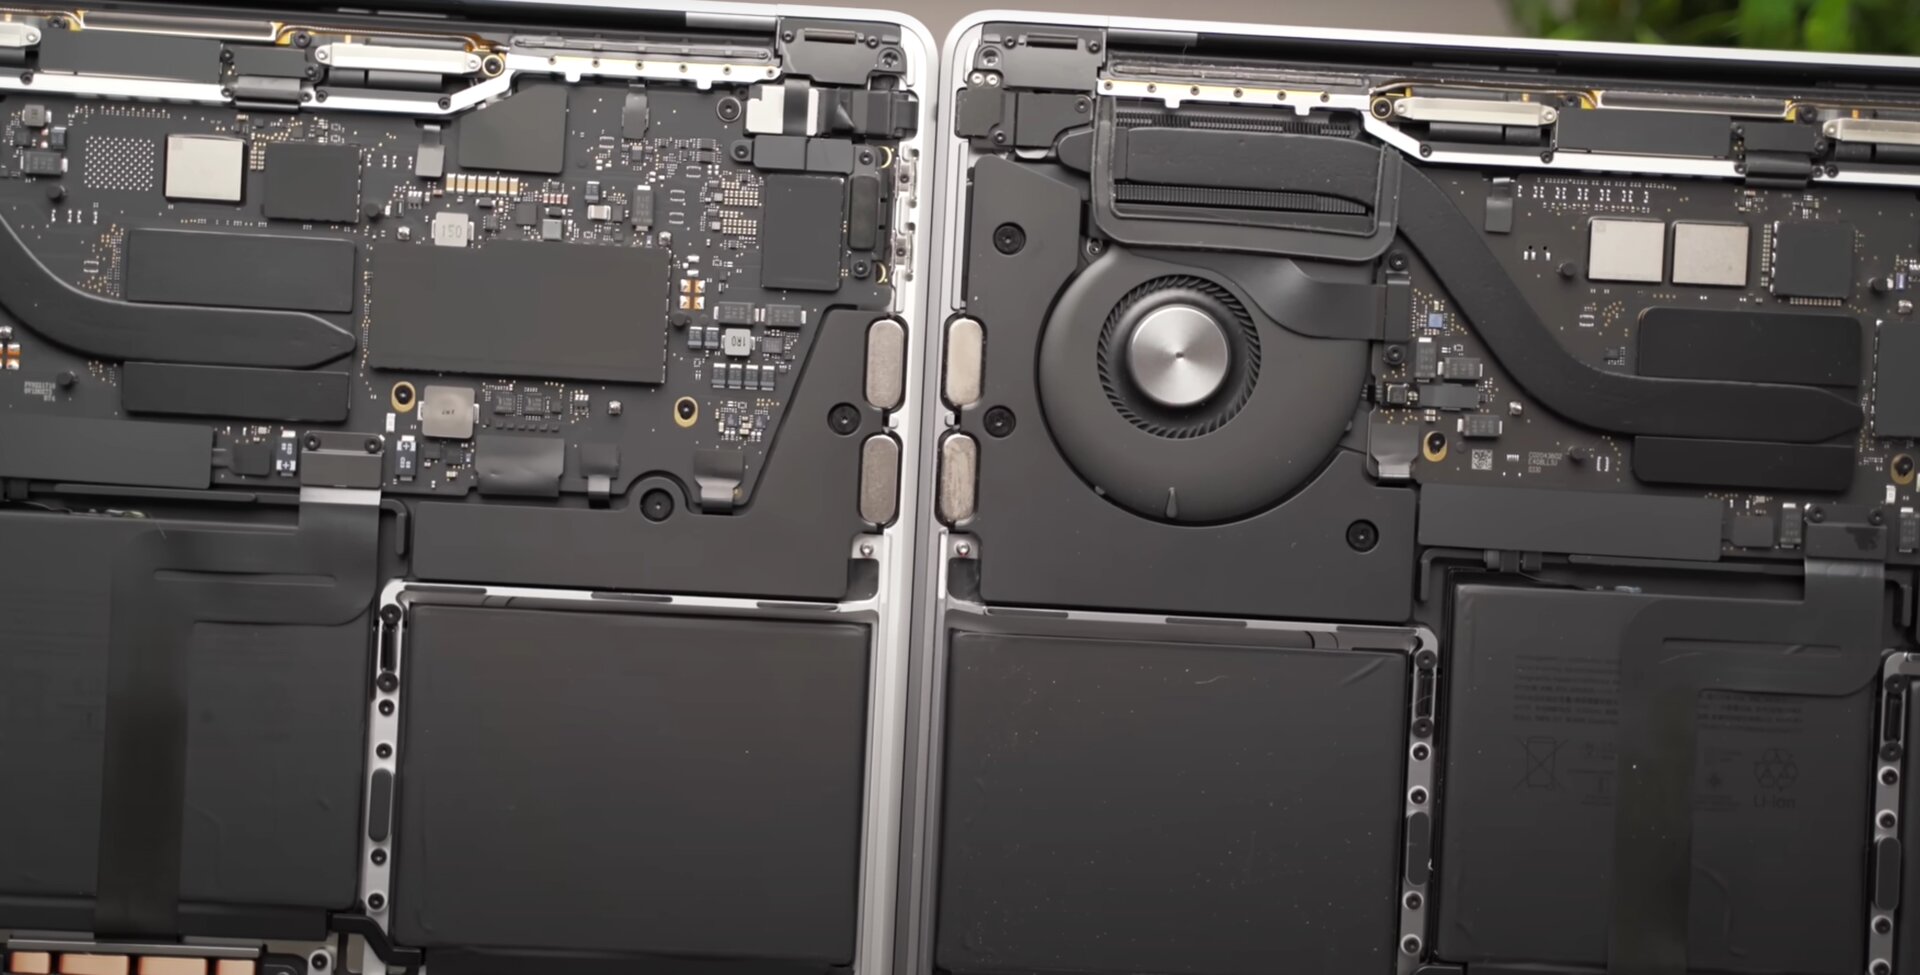 Rechts MacBook Pro 13 mit M1 und 2 NAND-Chips, links MacBook Pro 13 mit M2 und nur 1 NAND-Chip